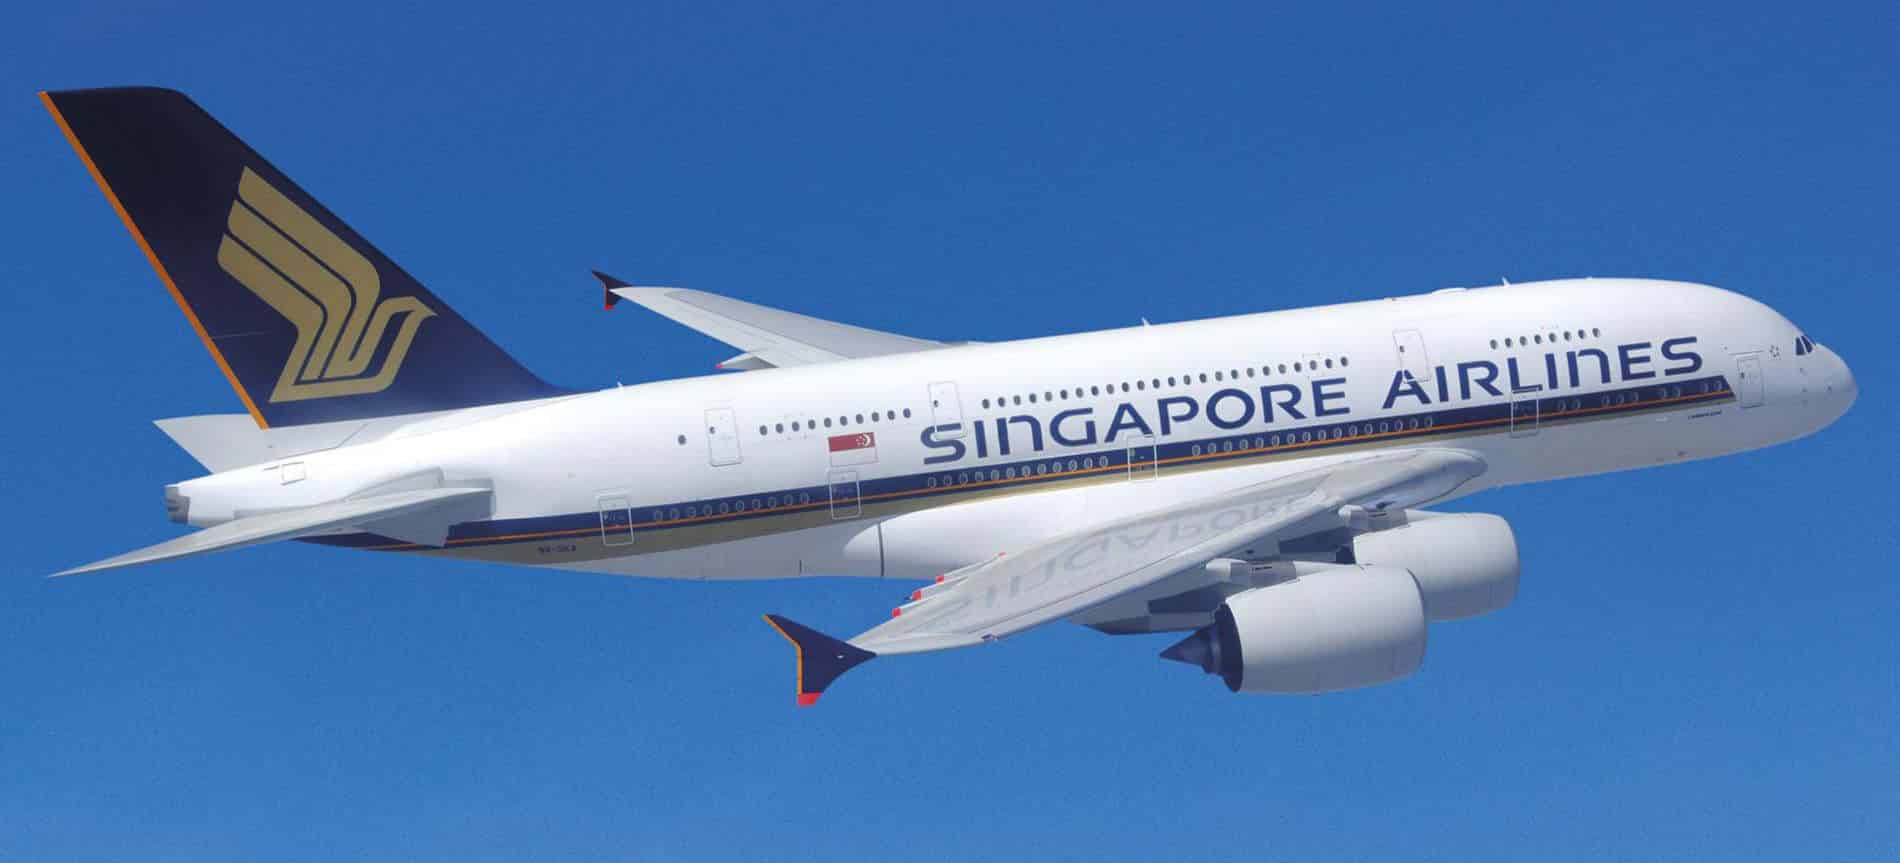 La convenienza di Singapore Airlines per visitare Sud-est asiatico e Australia